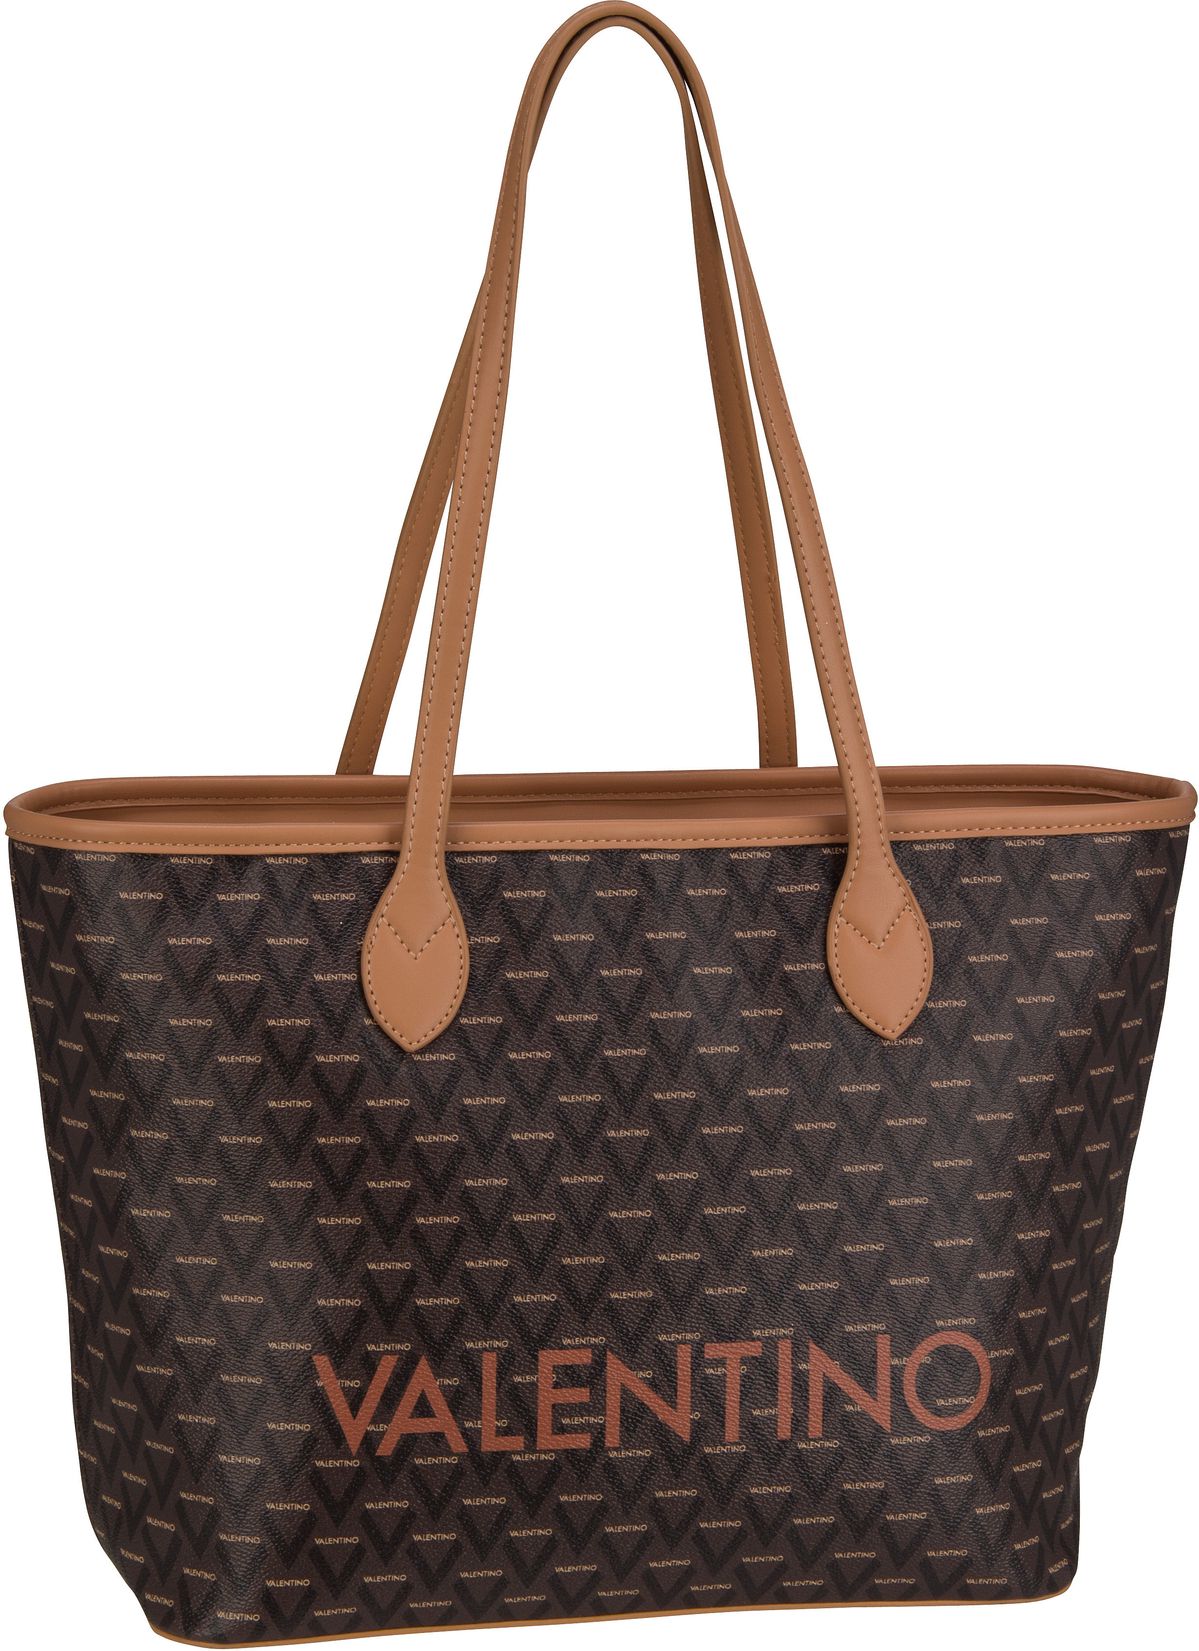 Valentino Liuto Shopping G01 - Cuoio/Multicolor